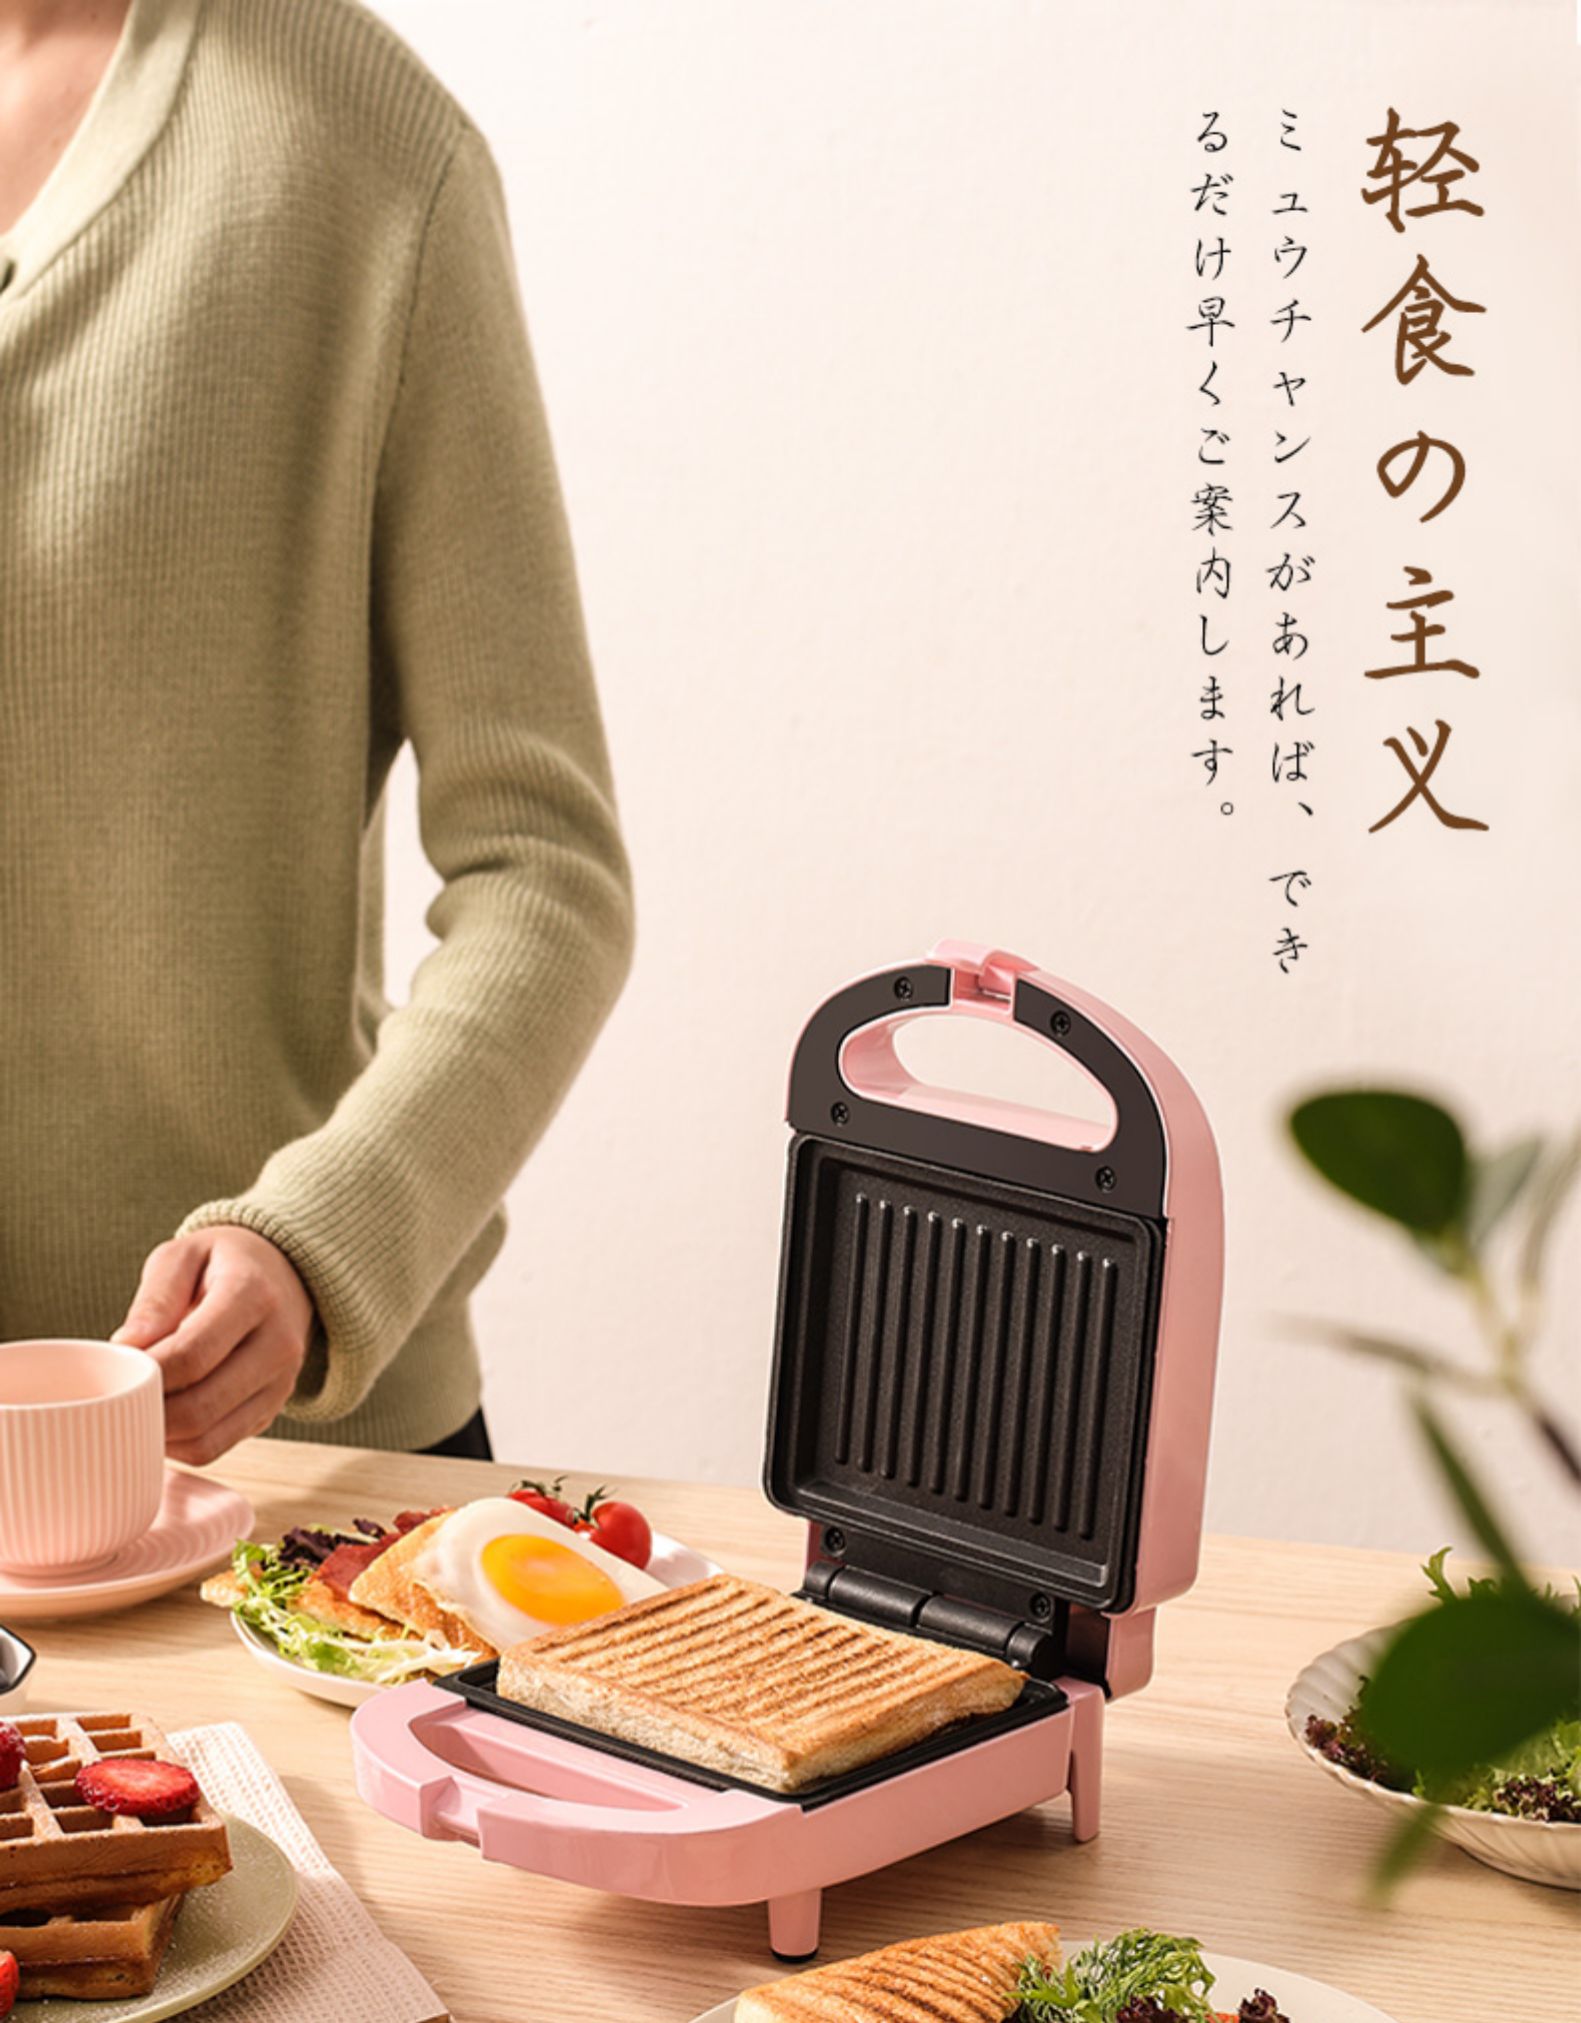 烁宁三明治机早餐机家用轻食机华夫饼机多功能加热吐司压烤面包机